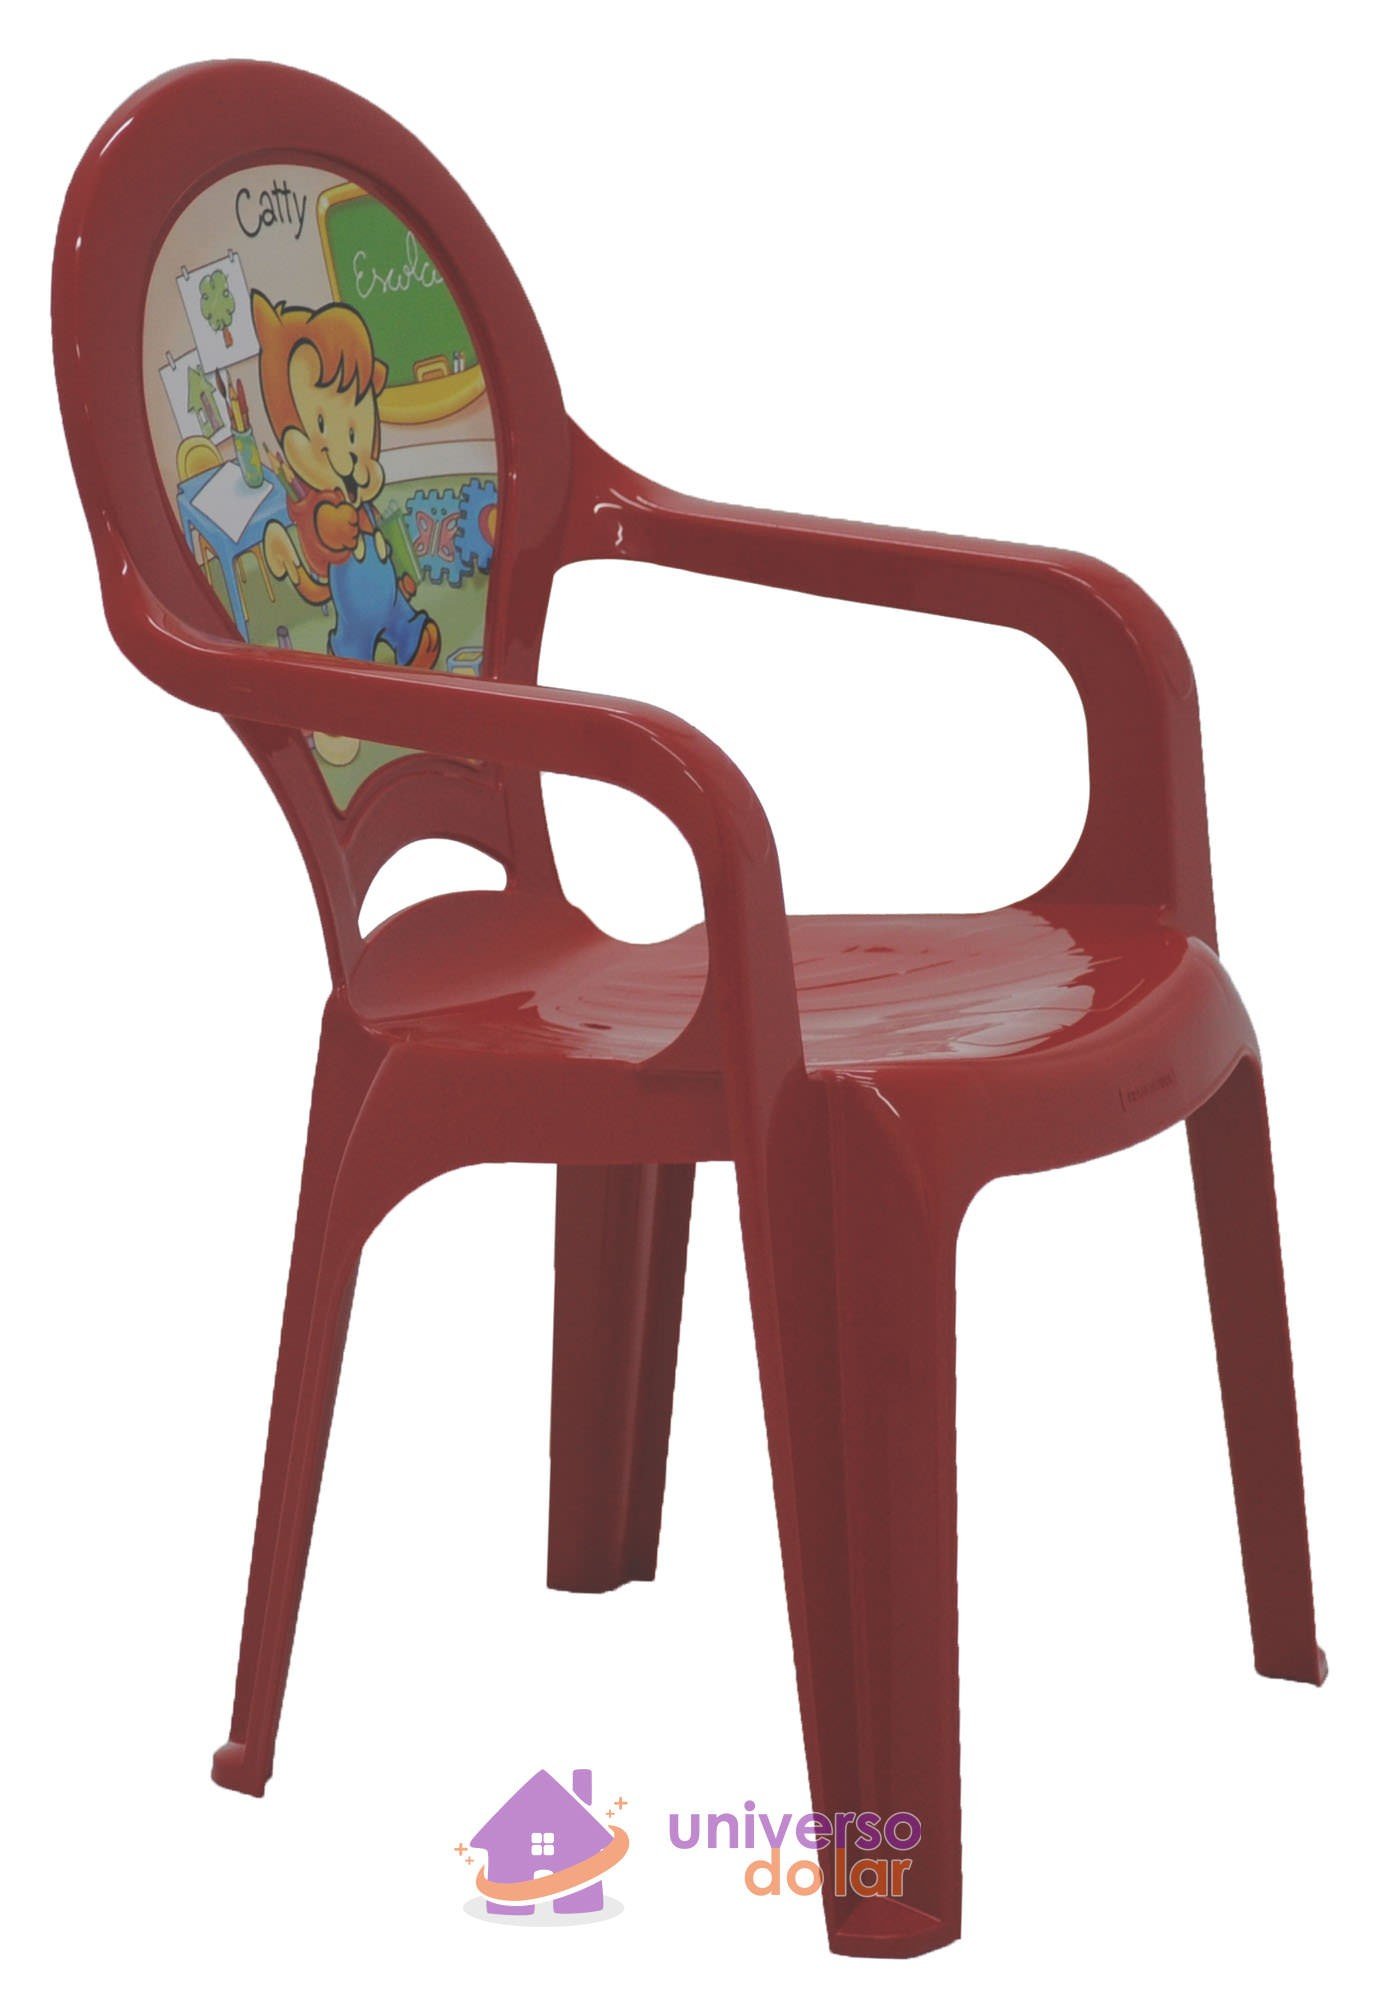 Cadeira Infantil Catty em Polipropileno Vermelho Adesivado